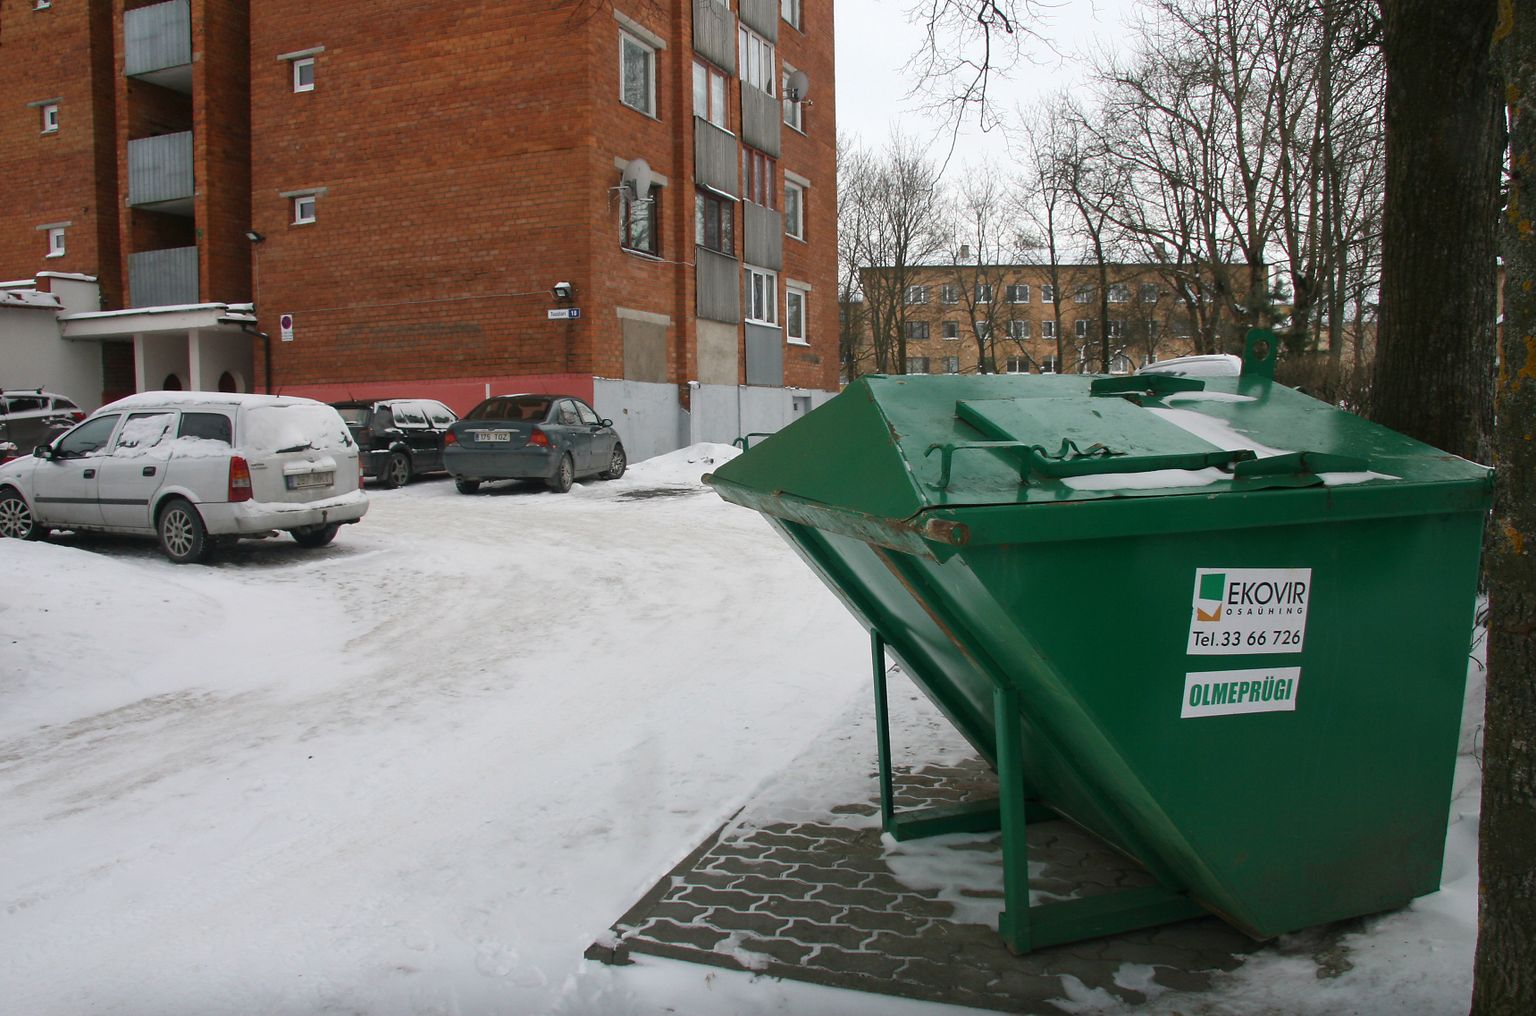 Вывозить бытовой мусор в Кохтла-Ярве "Ekovir" продолжит, но от сильно подорожавших контейнеров потребители могут отказаться.